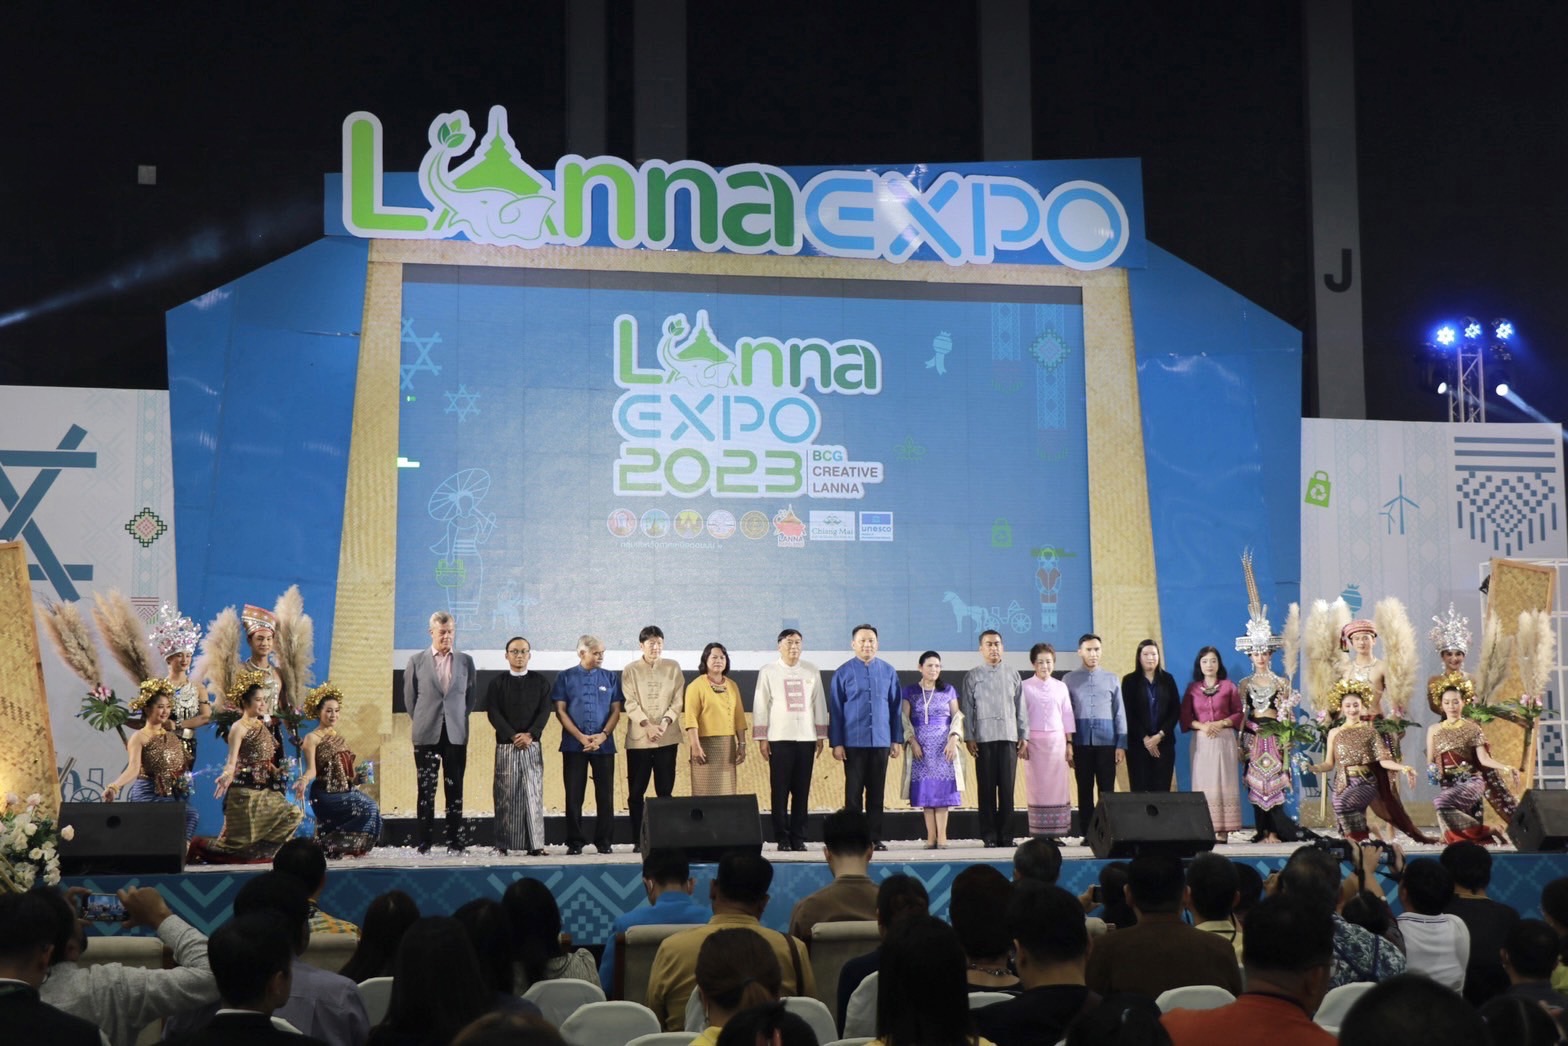 กลุ่มจังหวัดภาคเหนือตอนบน 1 จัดงานแสดงนวัตกรรมและจำหน่ายสินค้า Lanna Expo 2023 ยกทัพสุดยอดผลิตภัณฑ์มาจำหน่ายกว่า 800 คูหา วันที่ 3-9 กรกฎาคม นี้ ที่ศูนย์ประชุมและแสดงสินค้านานาชาติฯ เชียงใหม่